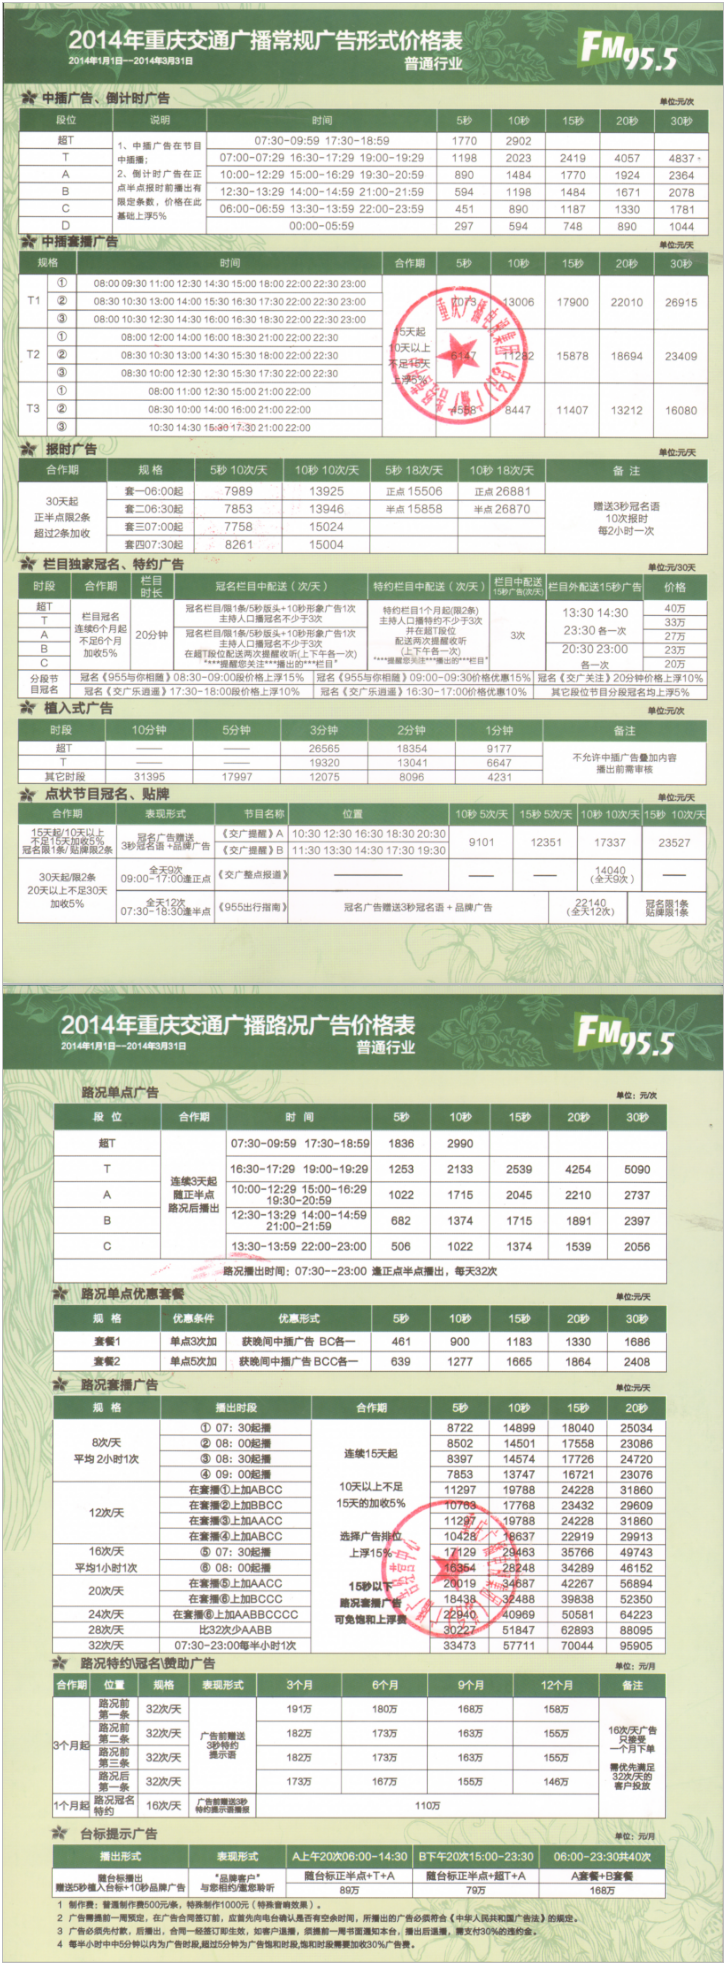 2014重庆人民广播电台交通广播 FM95.5广告报价表.png